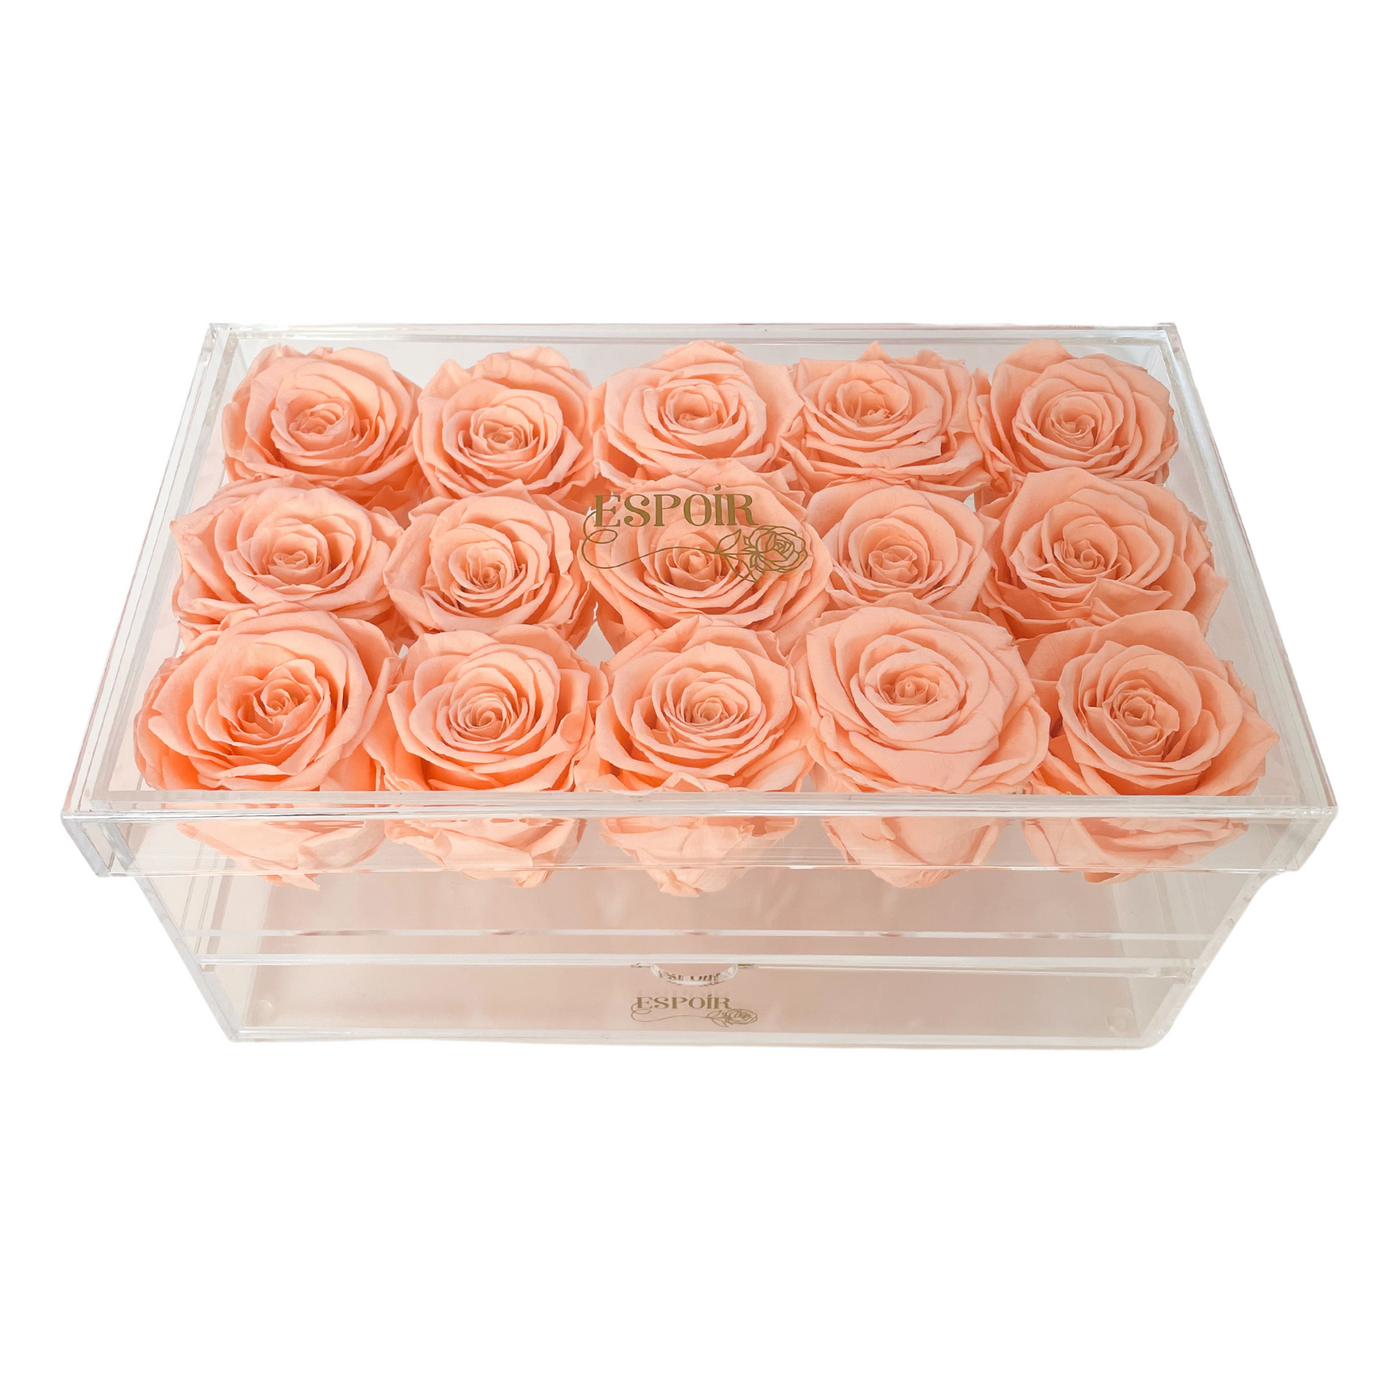 Fifteen Rose Keepsake Box